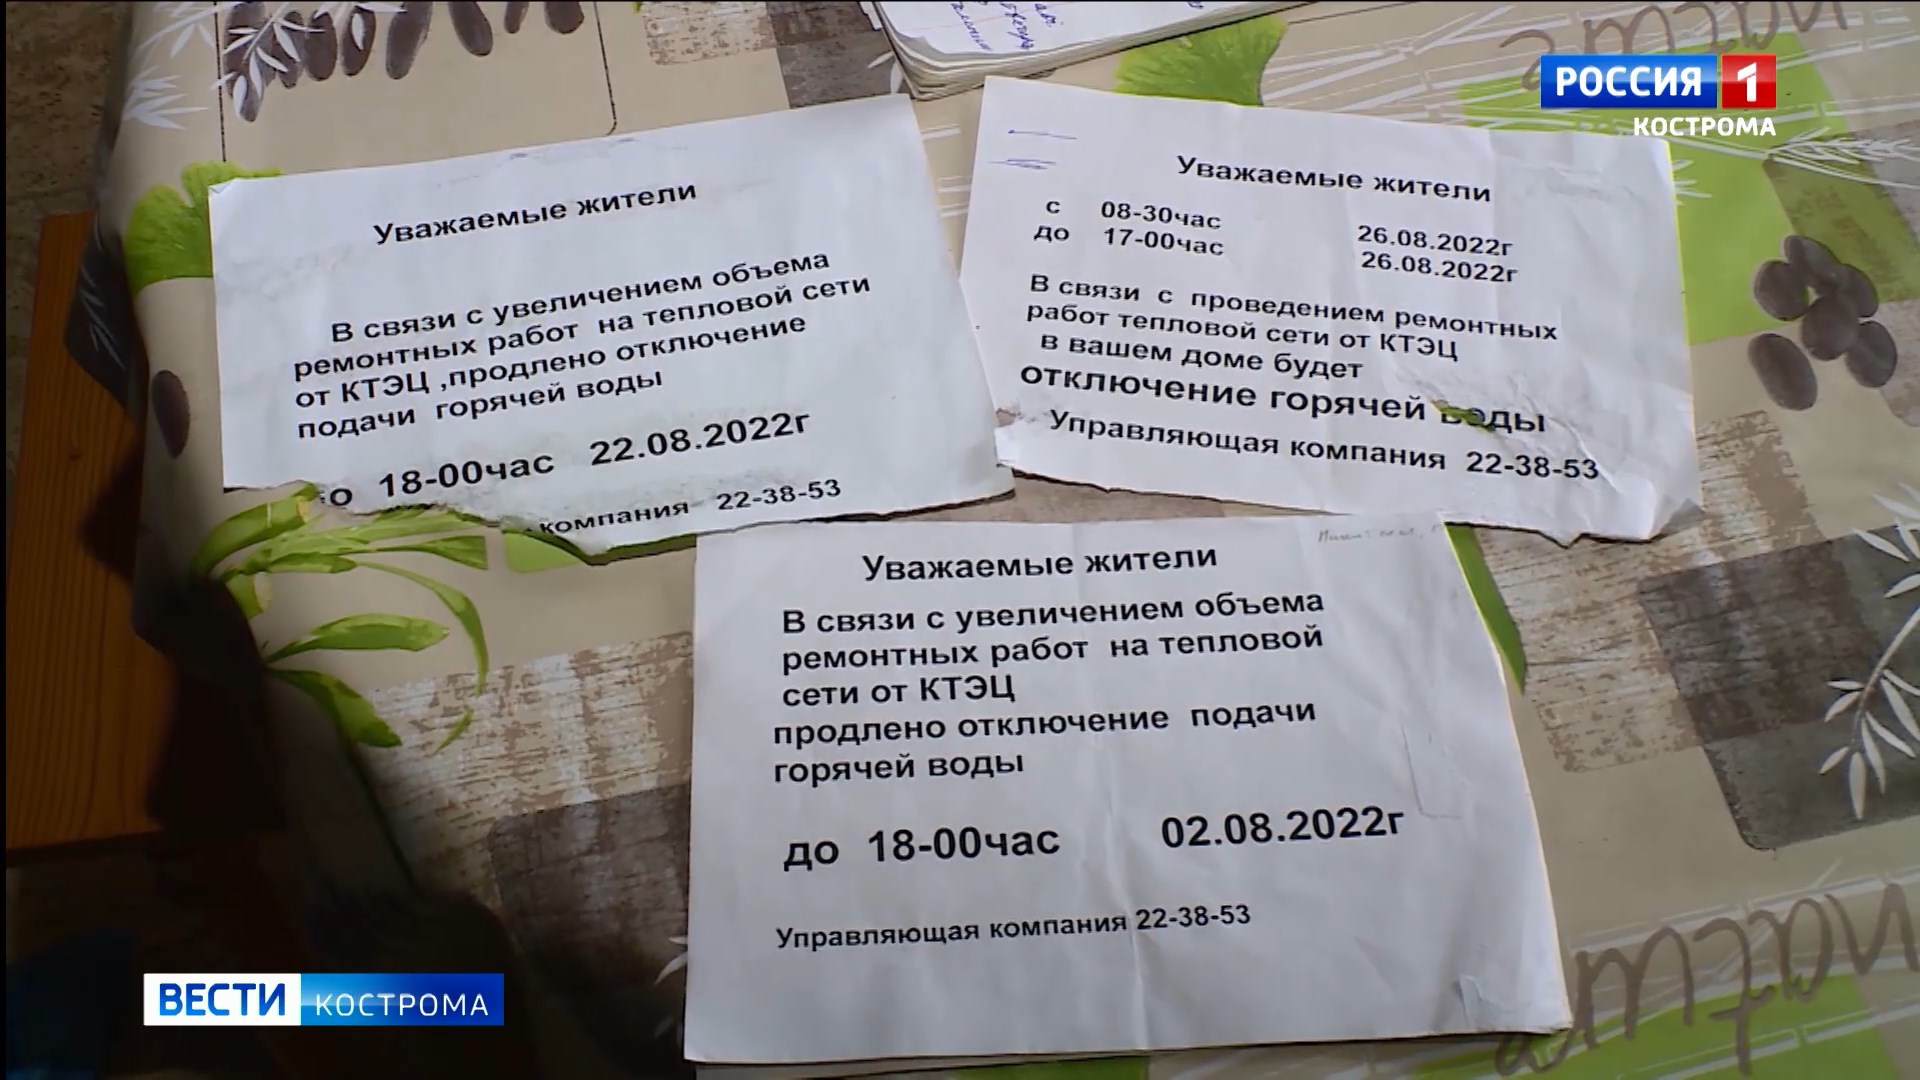 Костромские активисты подали заявку на проведение пикета из-за отсутствия горячей воды